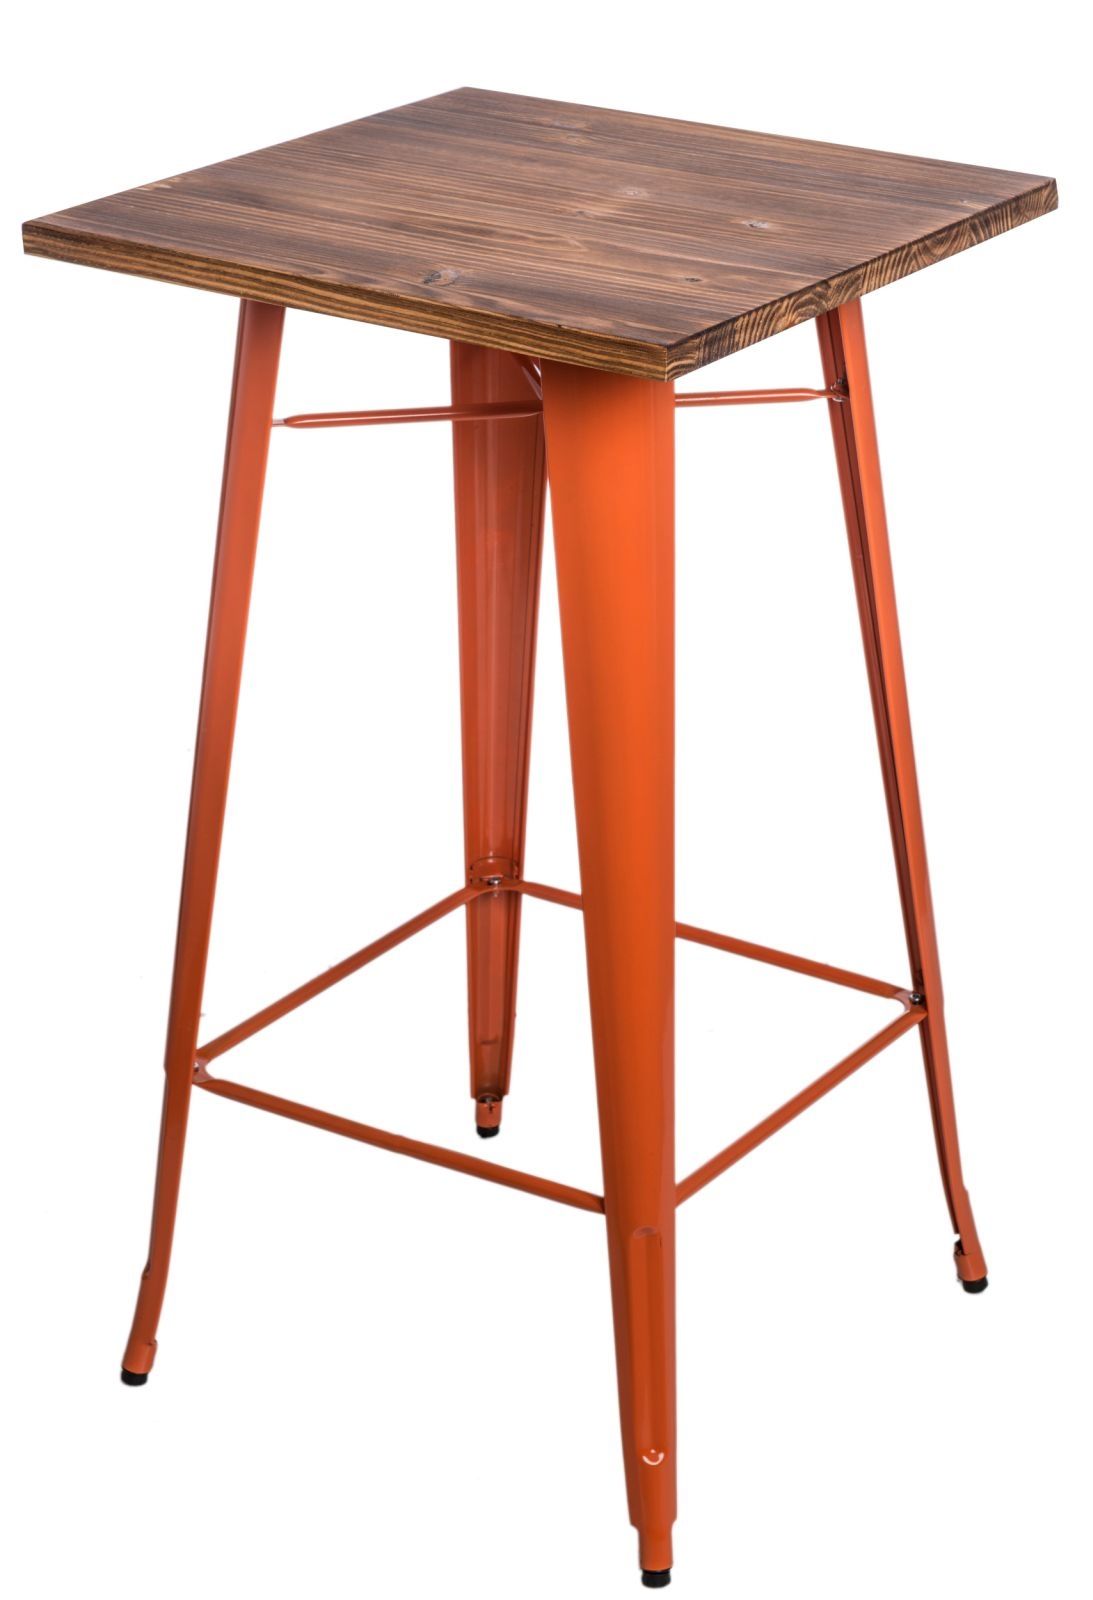  Stôl barový Paris Wood oranžový sosna - mobler.sk